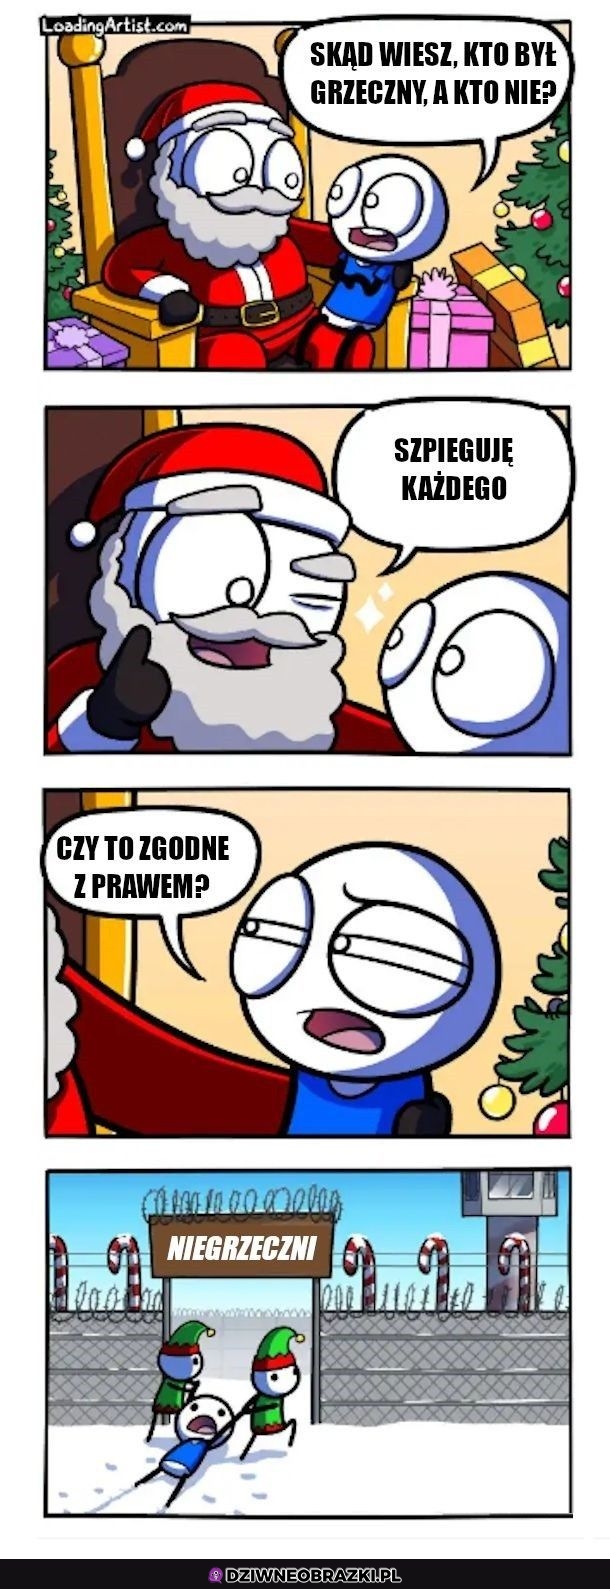 Skąd Mikołaj to wie?